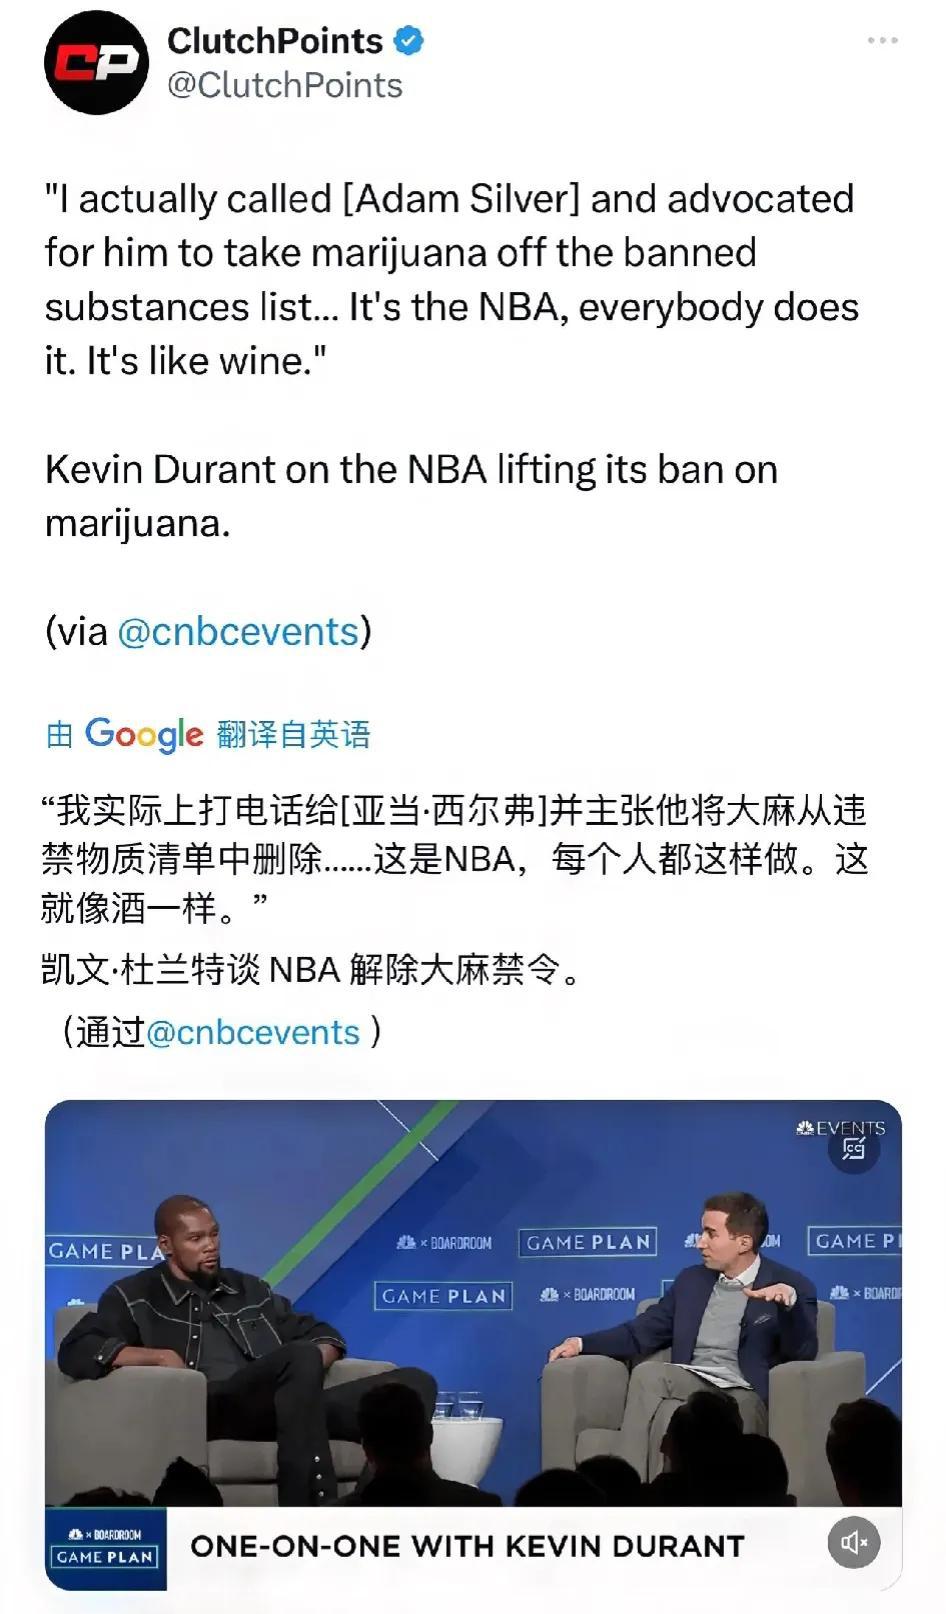 近日杜兰特参加某档节目是说道：“我和萧华就大麻在NBA合法化进行了讨论，萧华也同(1)